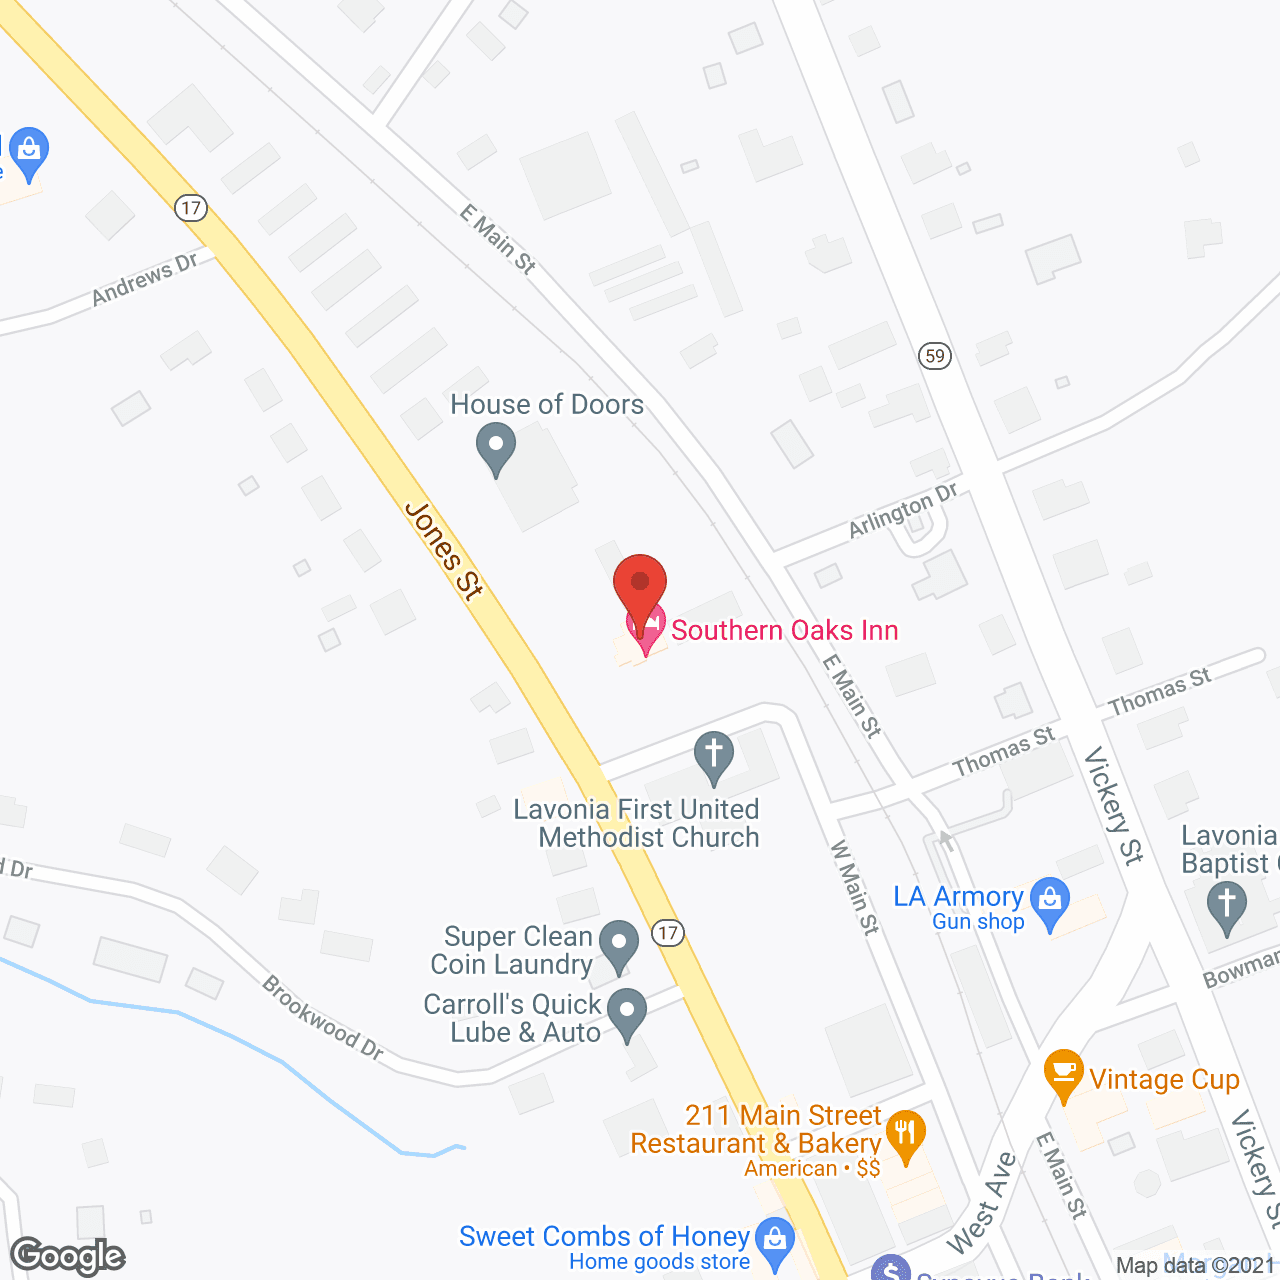 Southern Oaks Retirement Inn in google map